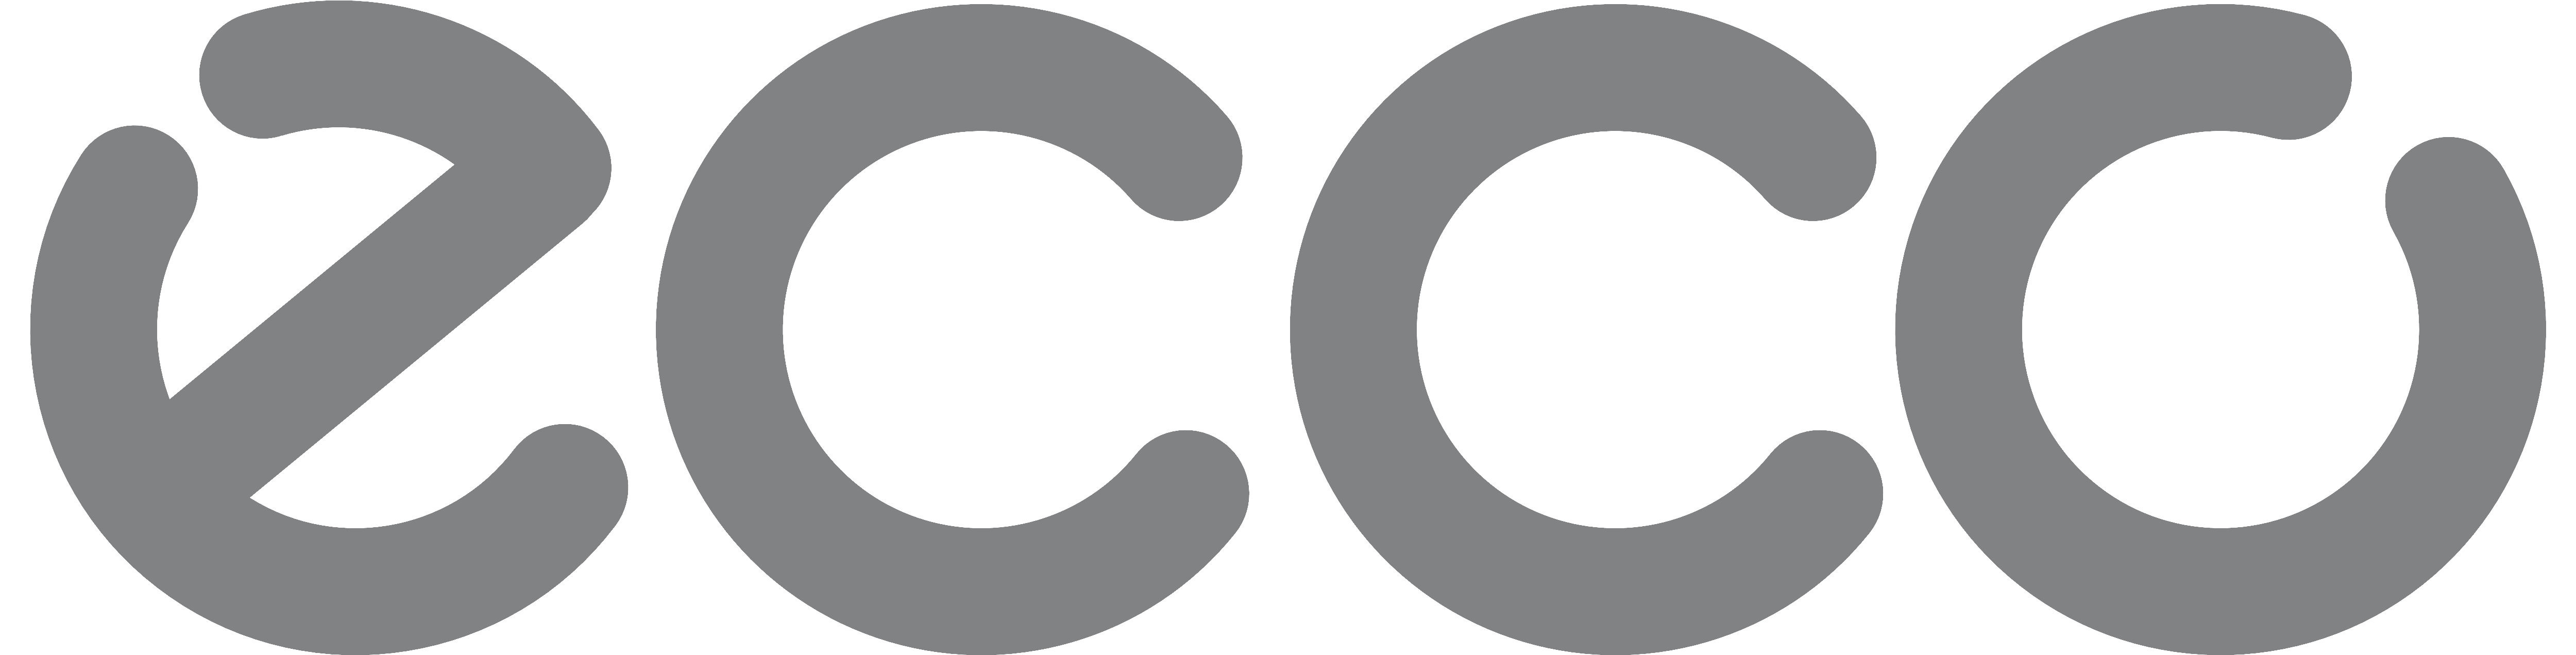 ECCO Brand & Company Profile | Brandirectory